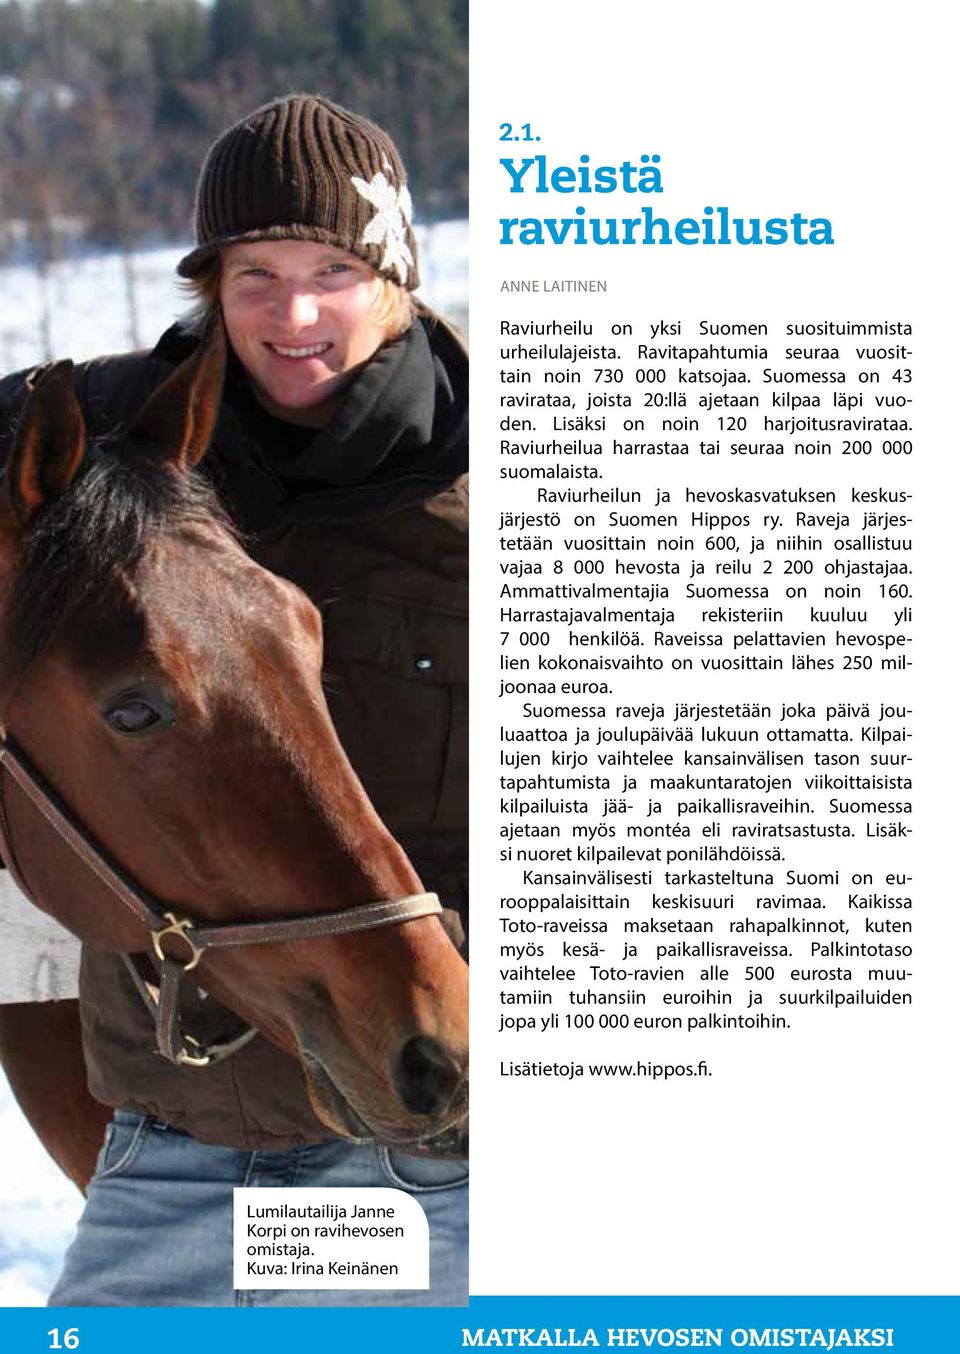 Raveja järjestetään vuosittain noin 600, ja niihin osallistuu vajaa 8 000 hevosta ja reilu 2 200 ohjastajaa. Ammattivalmentajia Suomessa on noin 160.